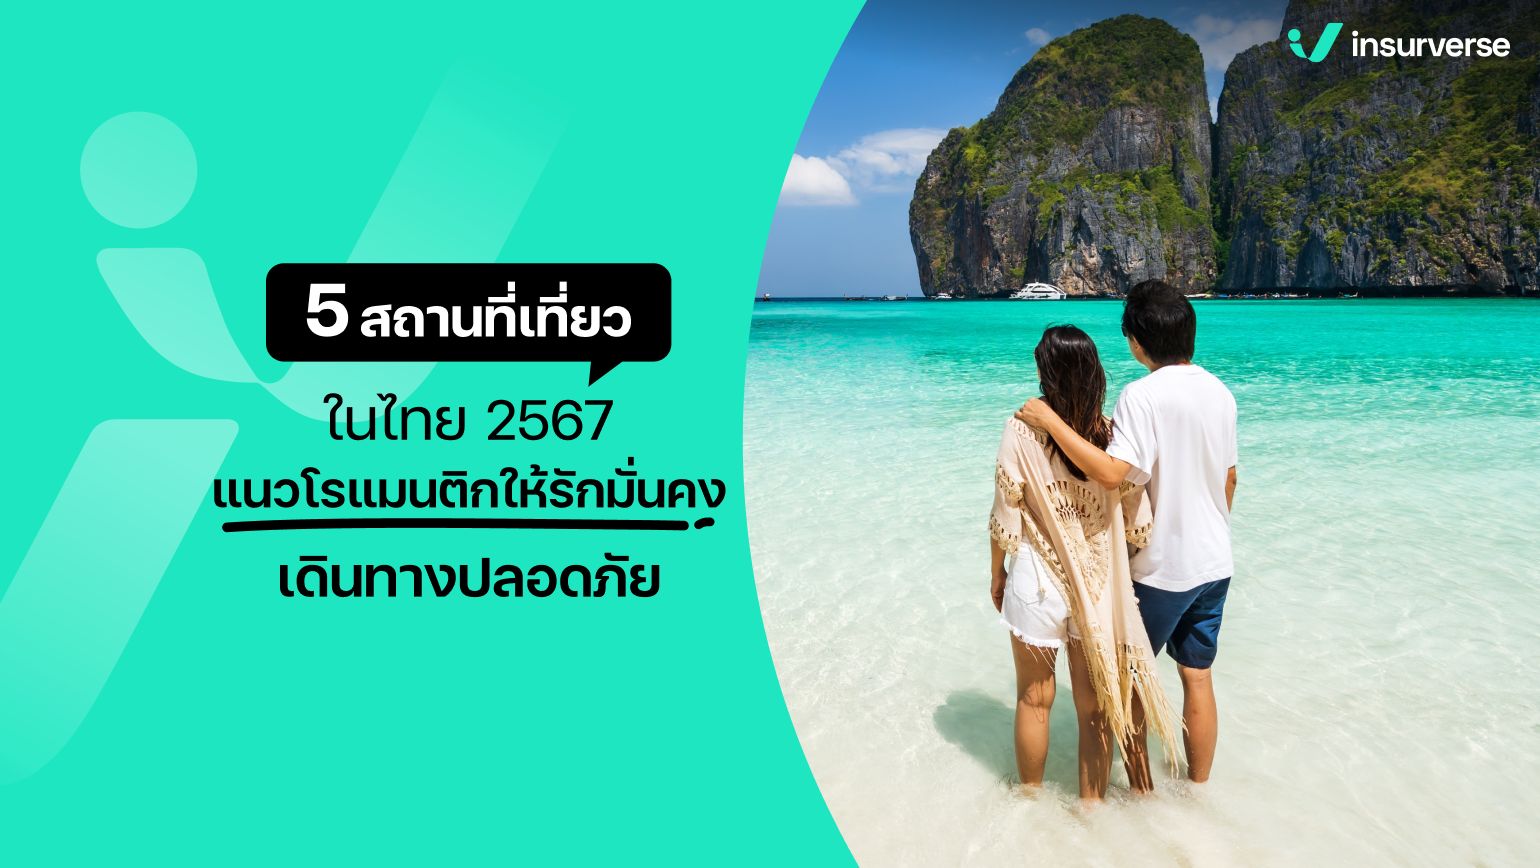 5 สถานที่เที่ยวในไทย 2567 แนวโรแมนติกให้รักมั่นคง เดินทางปลอดภัย